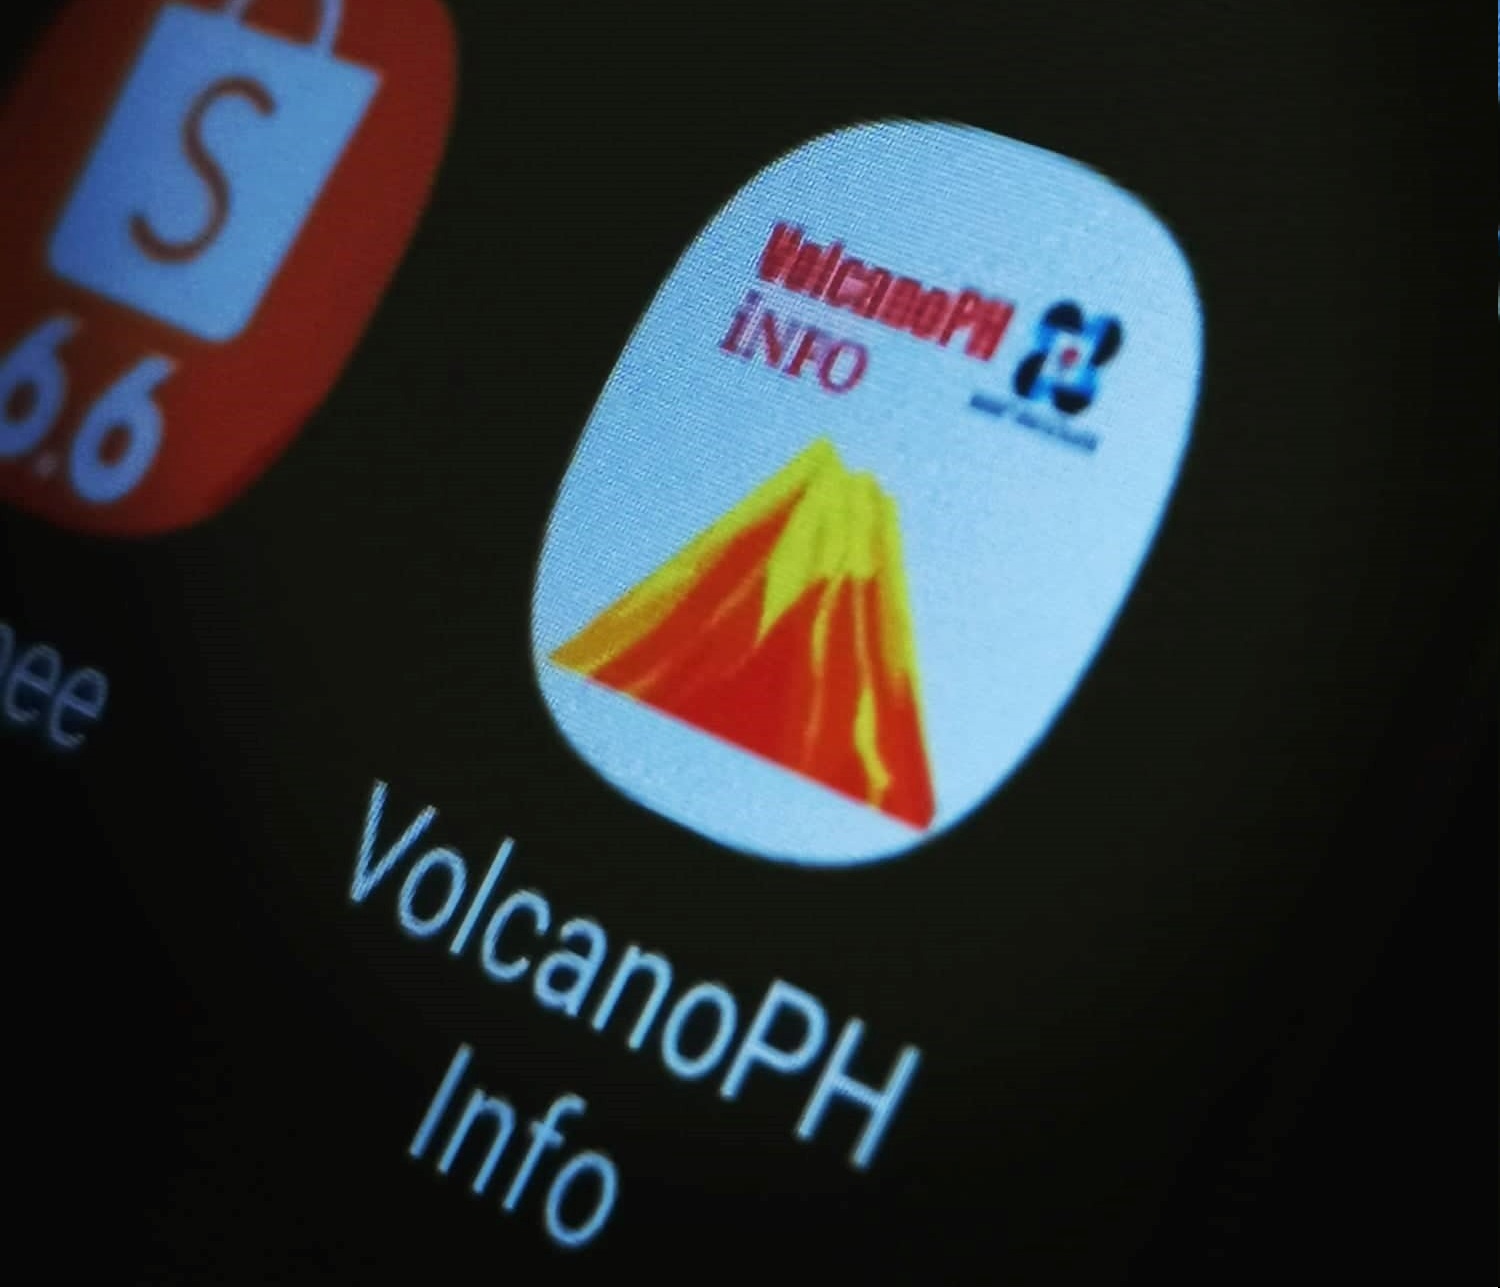 VolcanoPh app to raise public awareness on volcano hazards for better preparedness image